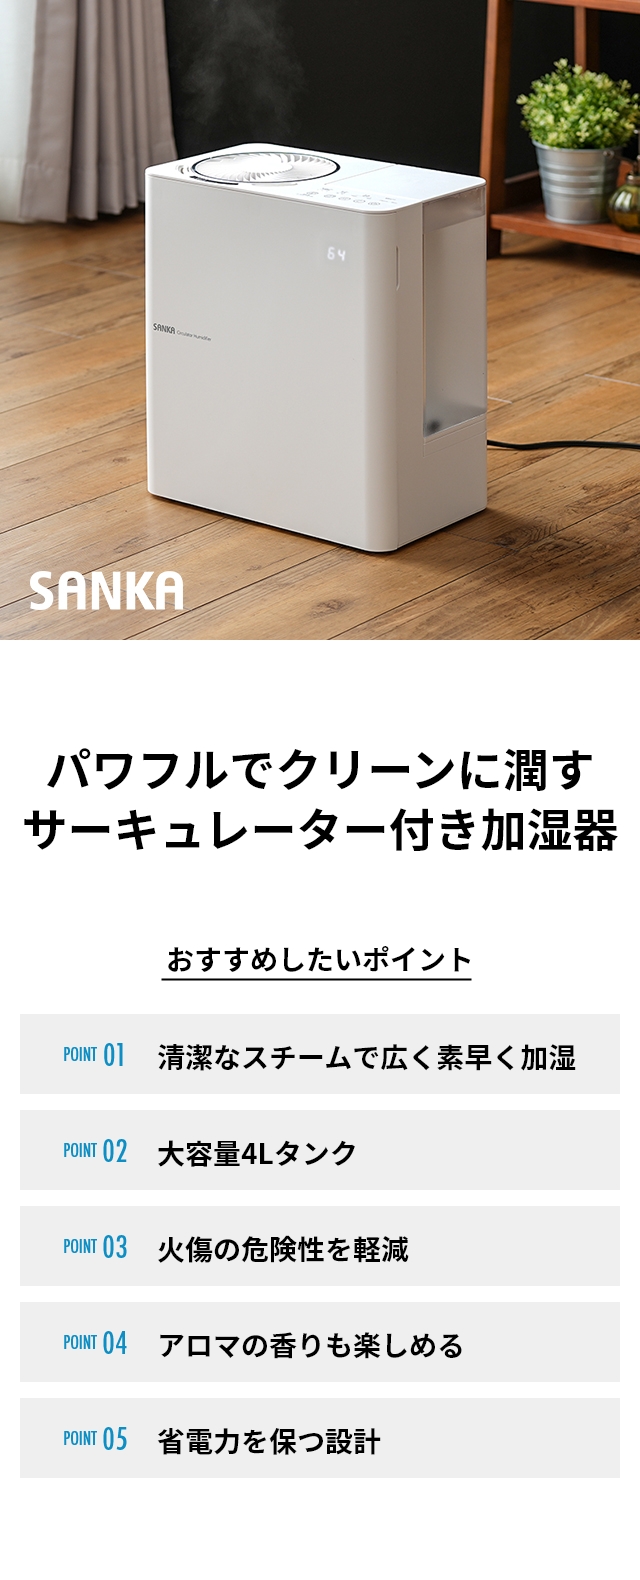 サンカ(SANKA) サーキュレーター付きパワースチーム加湿器 SSH-8000：パワフルでクリーンに潤す サーキュレーター付き加湿器